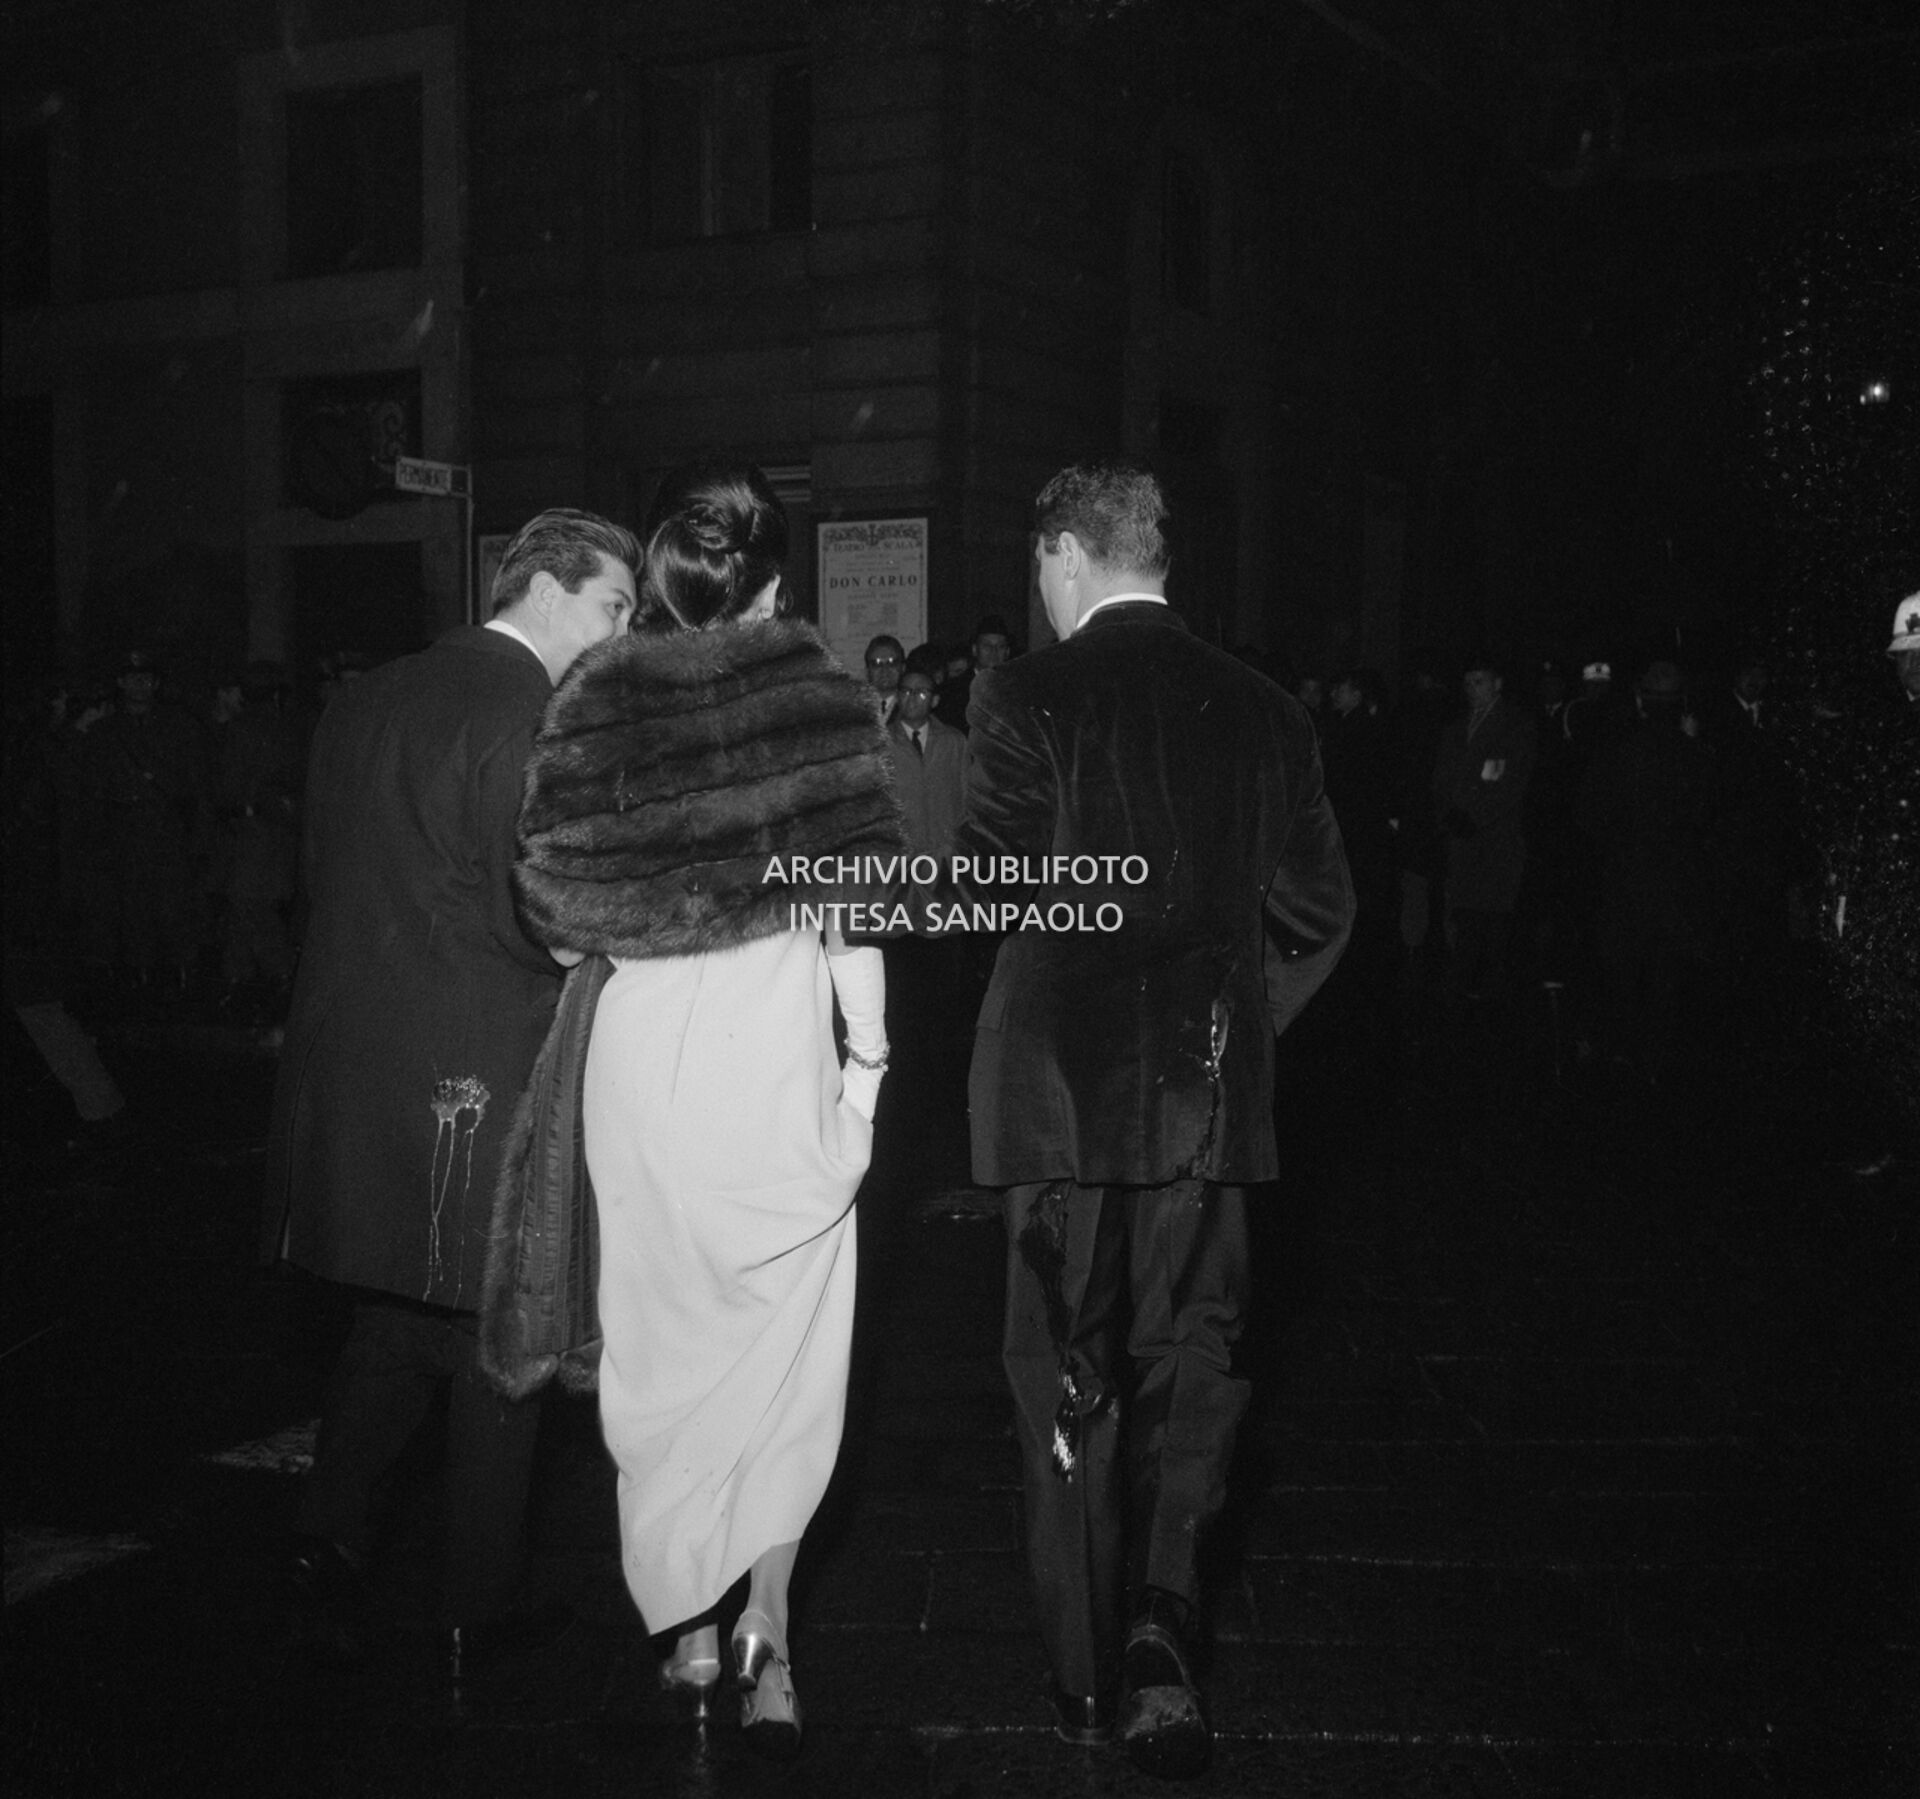 Spettatori in abito da sera, imbrattato di uova lanciate dai contestatori del Movimento studentesco, fuori dal Teatro alla Scala la sera dell'inaugurazione della stagione lirica 1968-1969